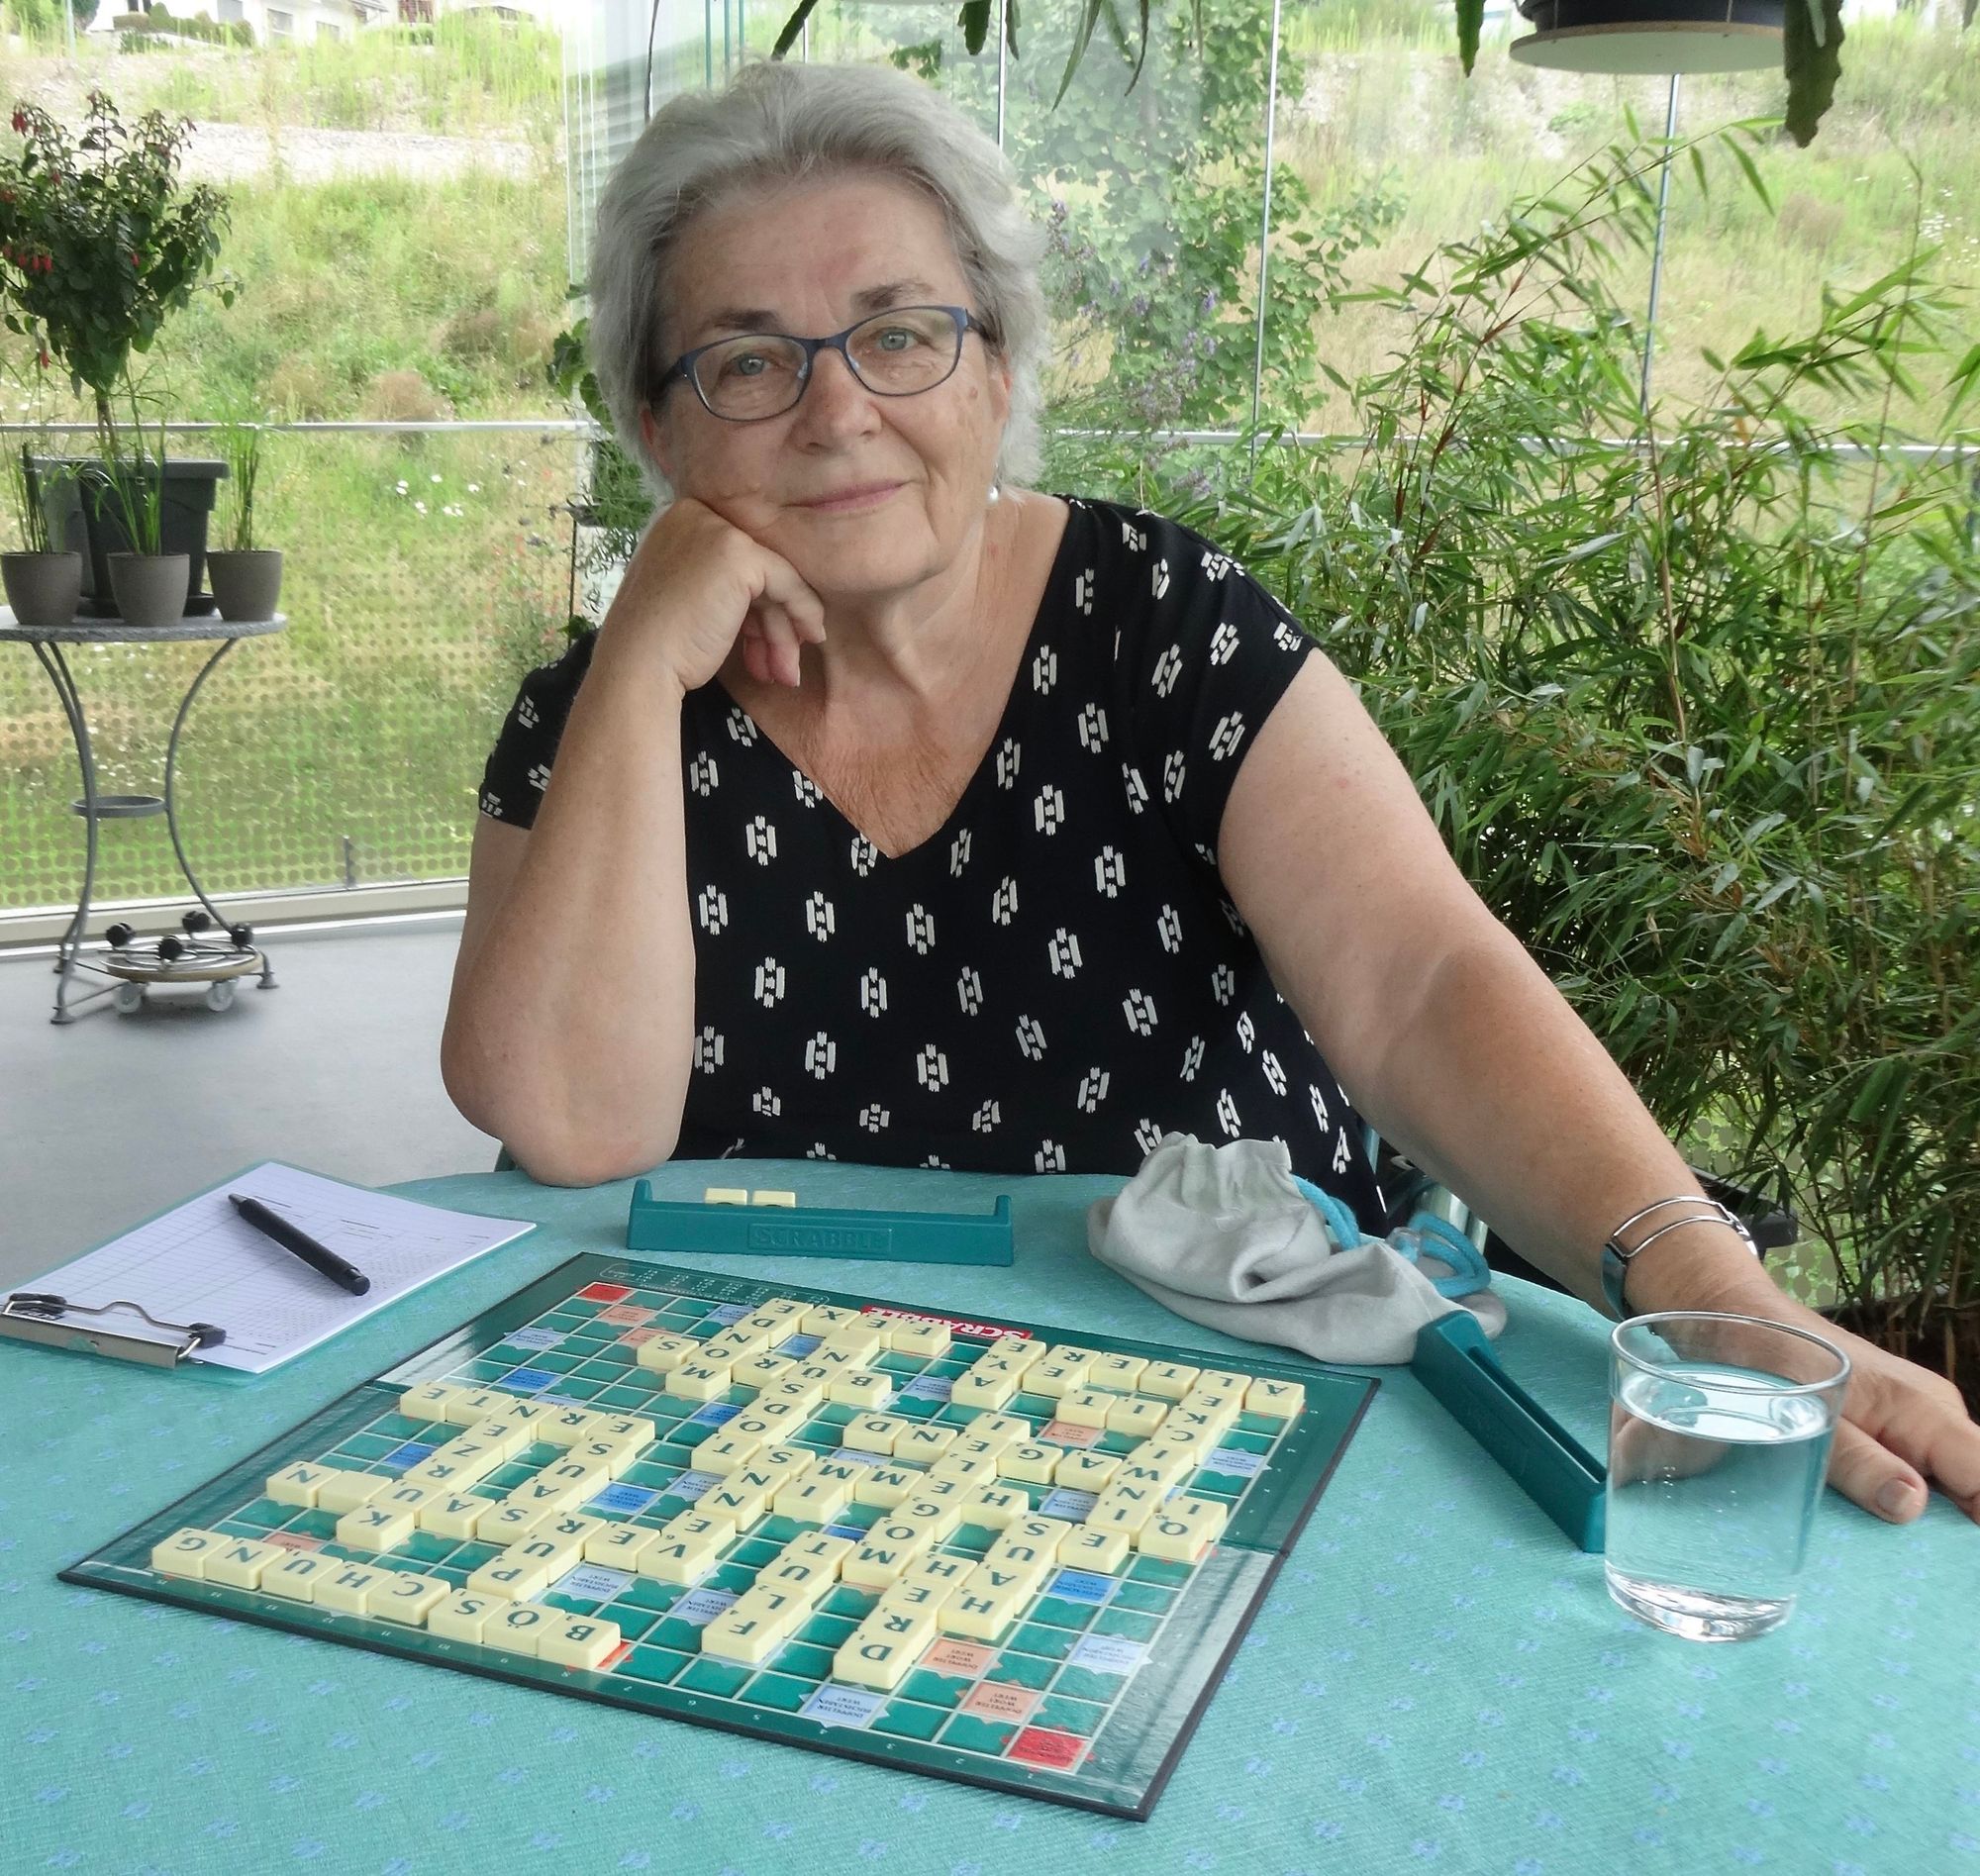 Regula Schilling Zahn‌ sitzt am Tisch vor einem Scrabble Spiel